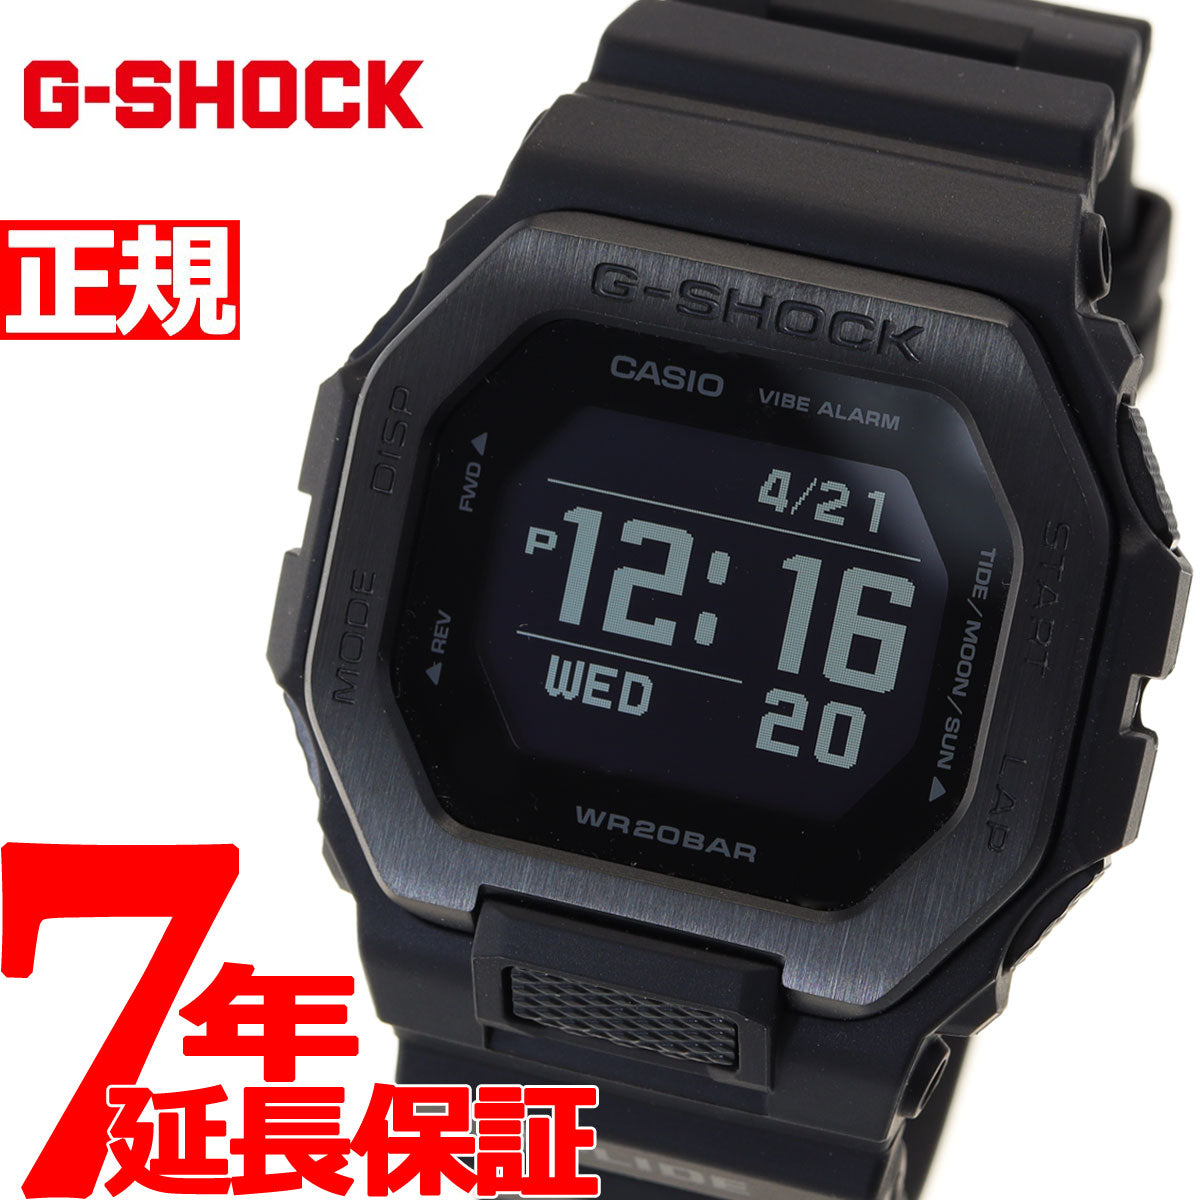 G-SHOCK カシオ G-LIDE Gショック Gライド 腕時計 メンズ CASIO GBX-100NS-1JF